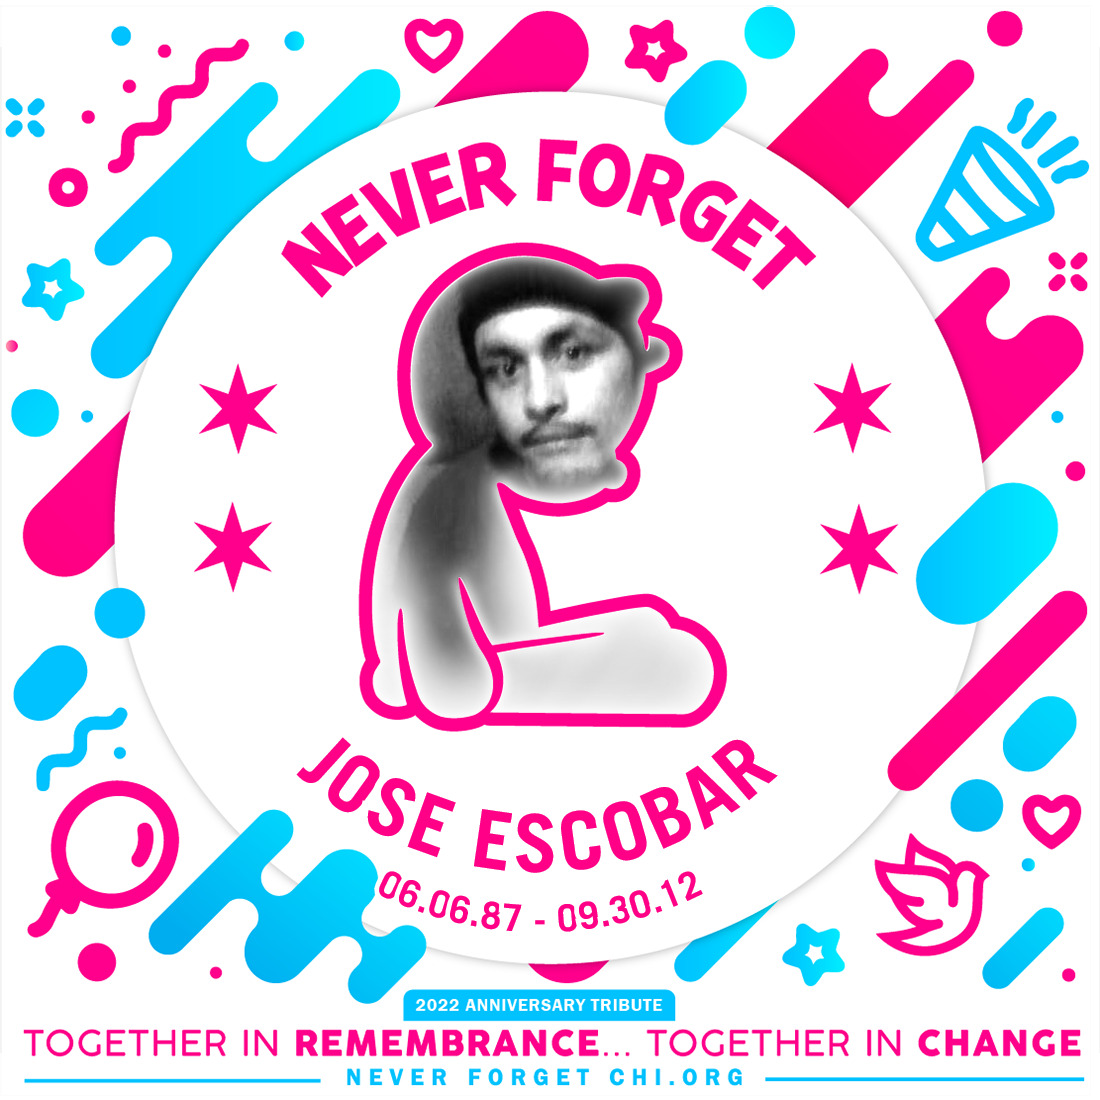 Jose Escobar